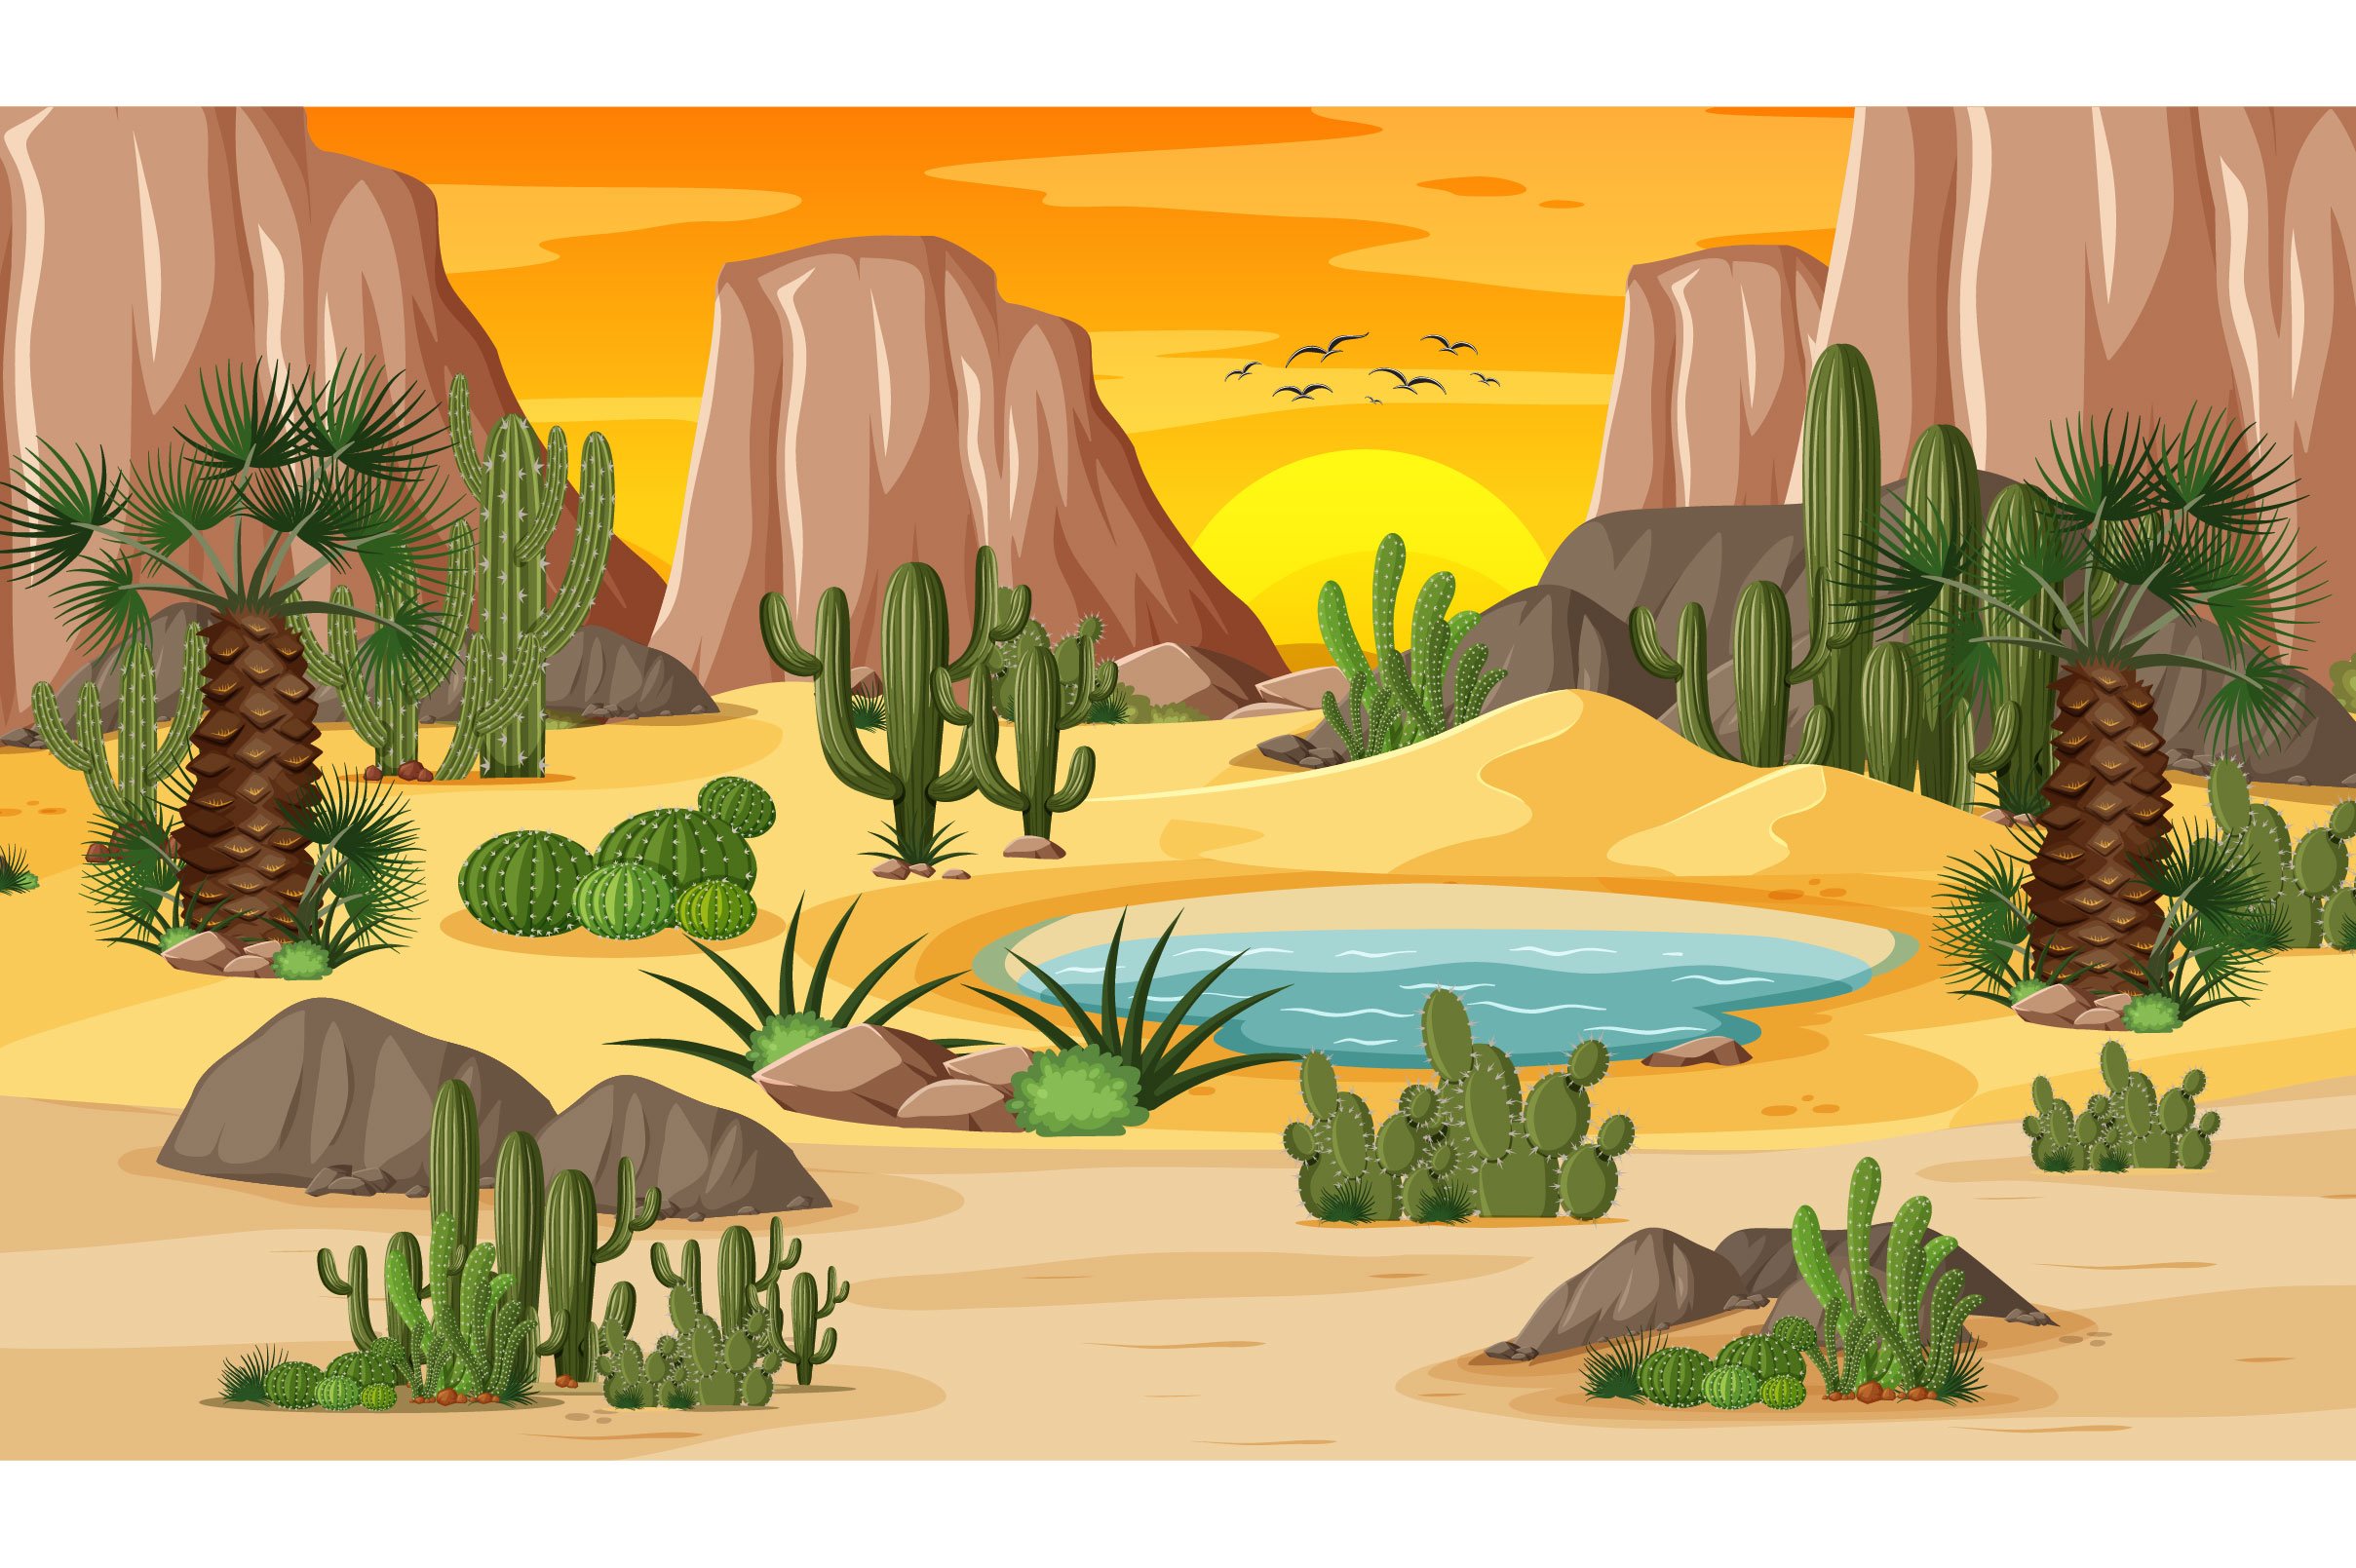 desert-forest-landscape-sunset-scene cover image.